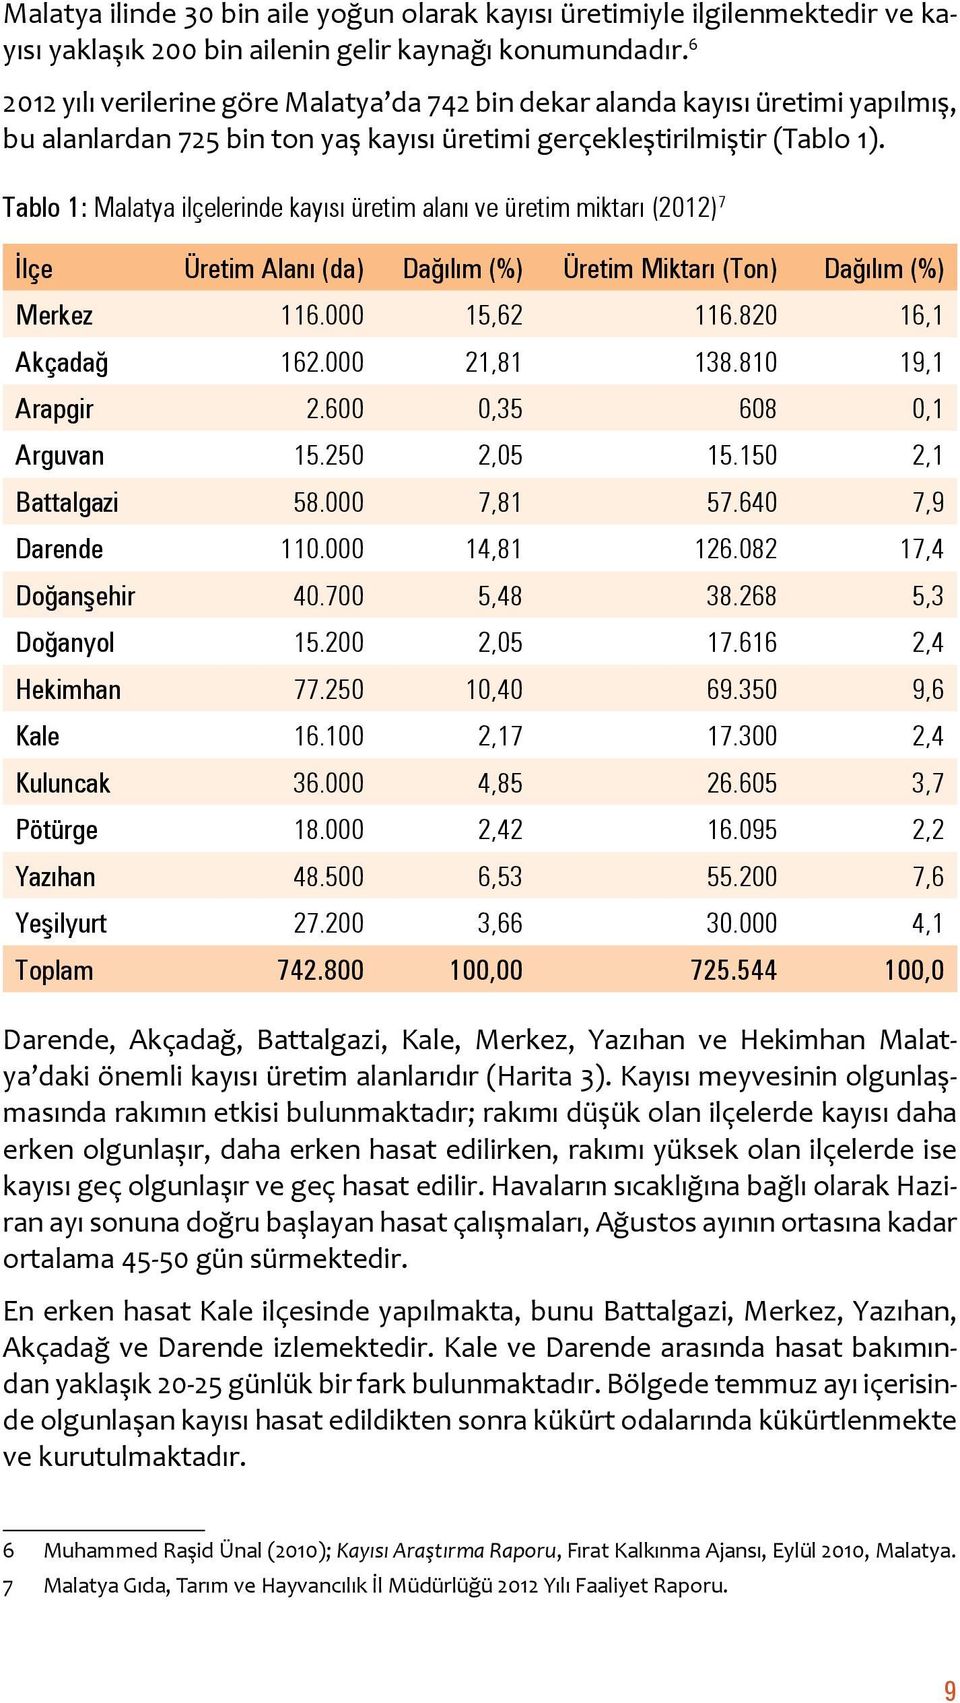 Tablo 1: Malatya ilçelerinde kayısı üretim alanı ve üretim miktarı (2012) 7 İlçe Üretim Alanı (da) Dağılım (%) Üretim Miktarı (Ton) Dağılım (%) Merkez 116.000 15,62 116.820 16,1 Akçadağ 162.